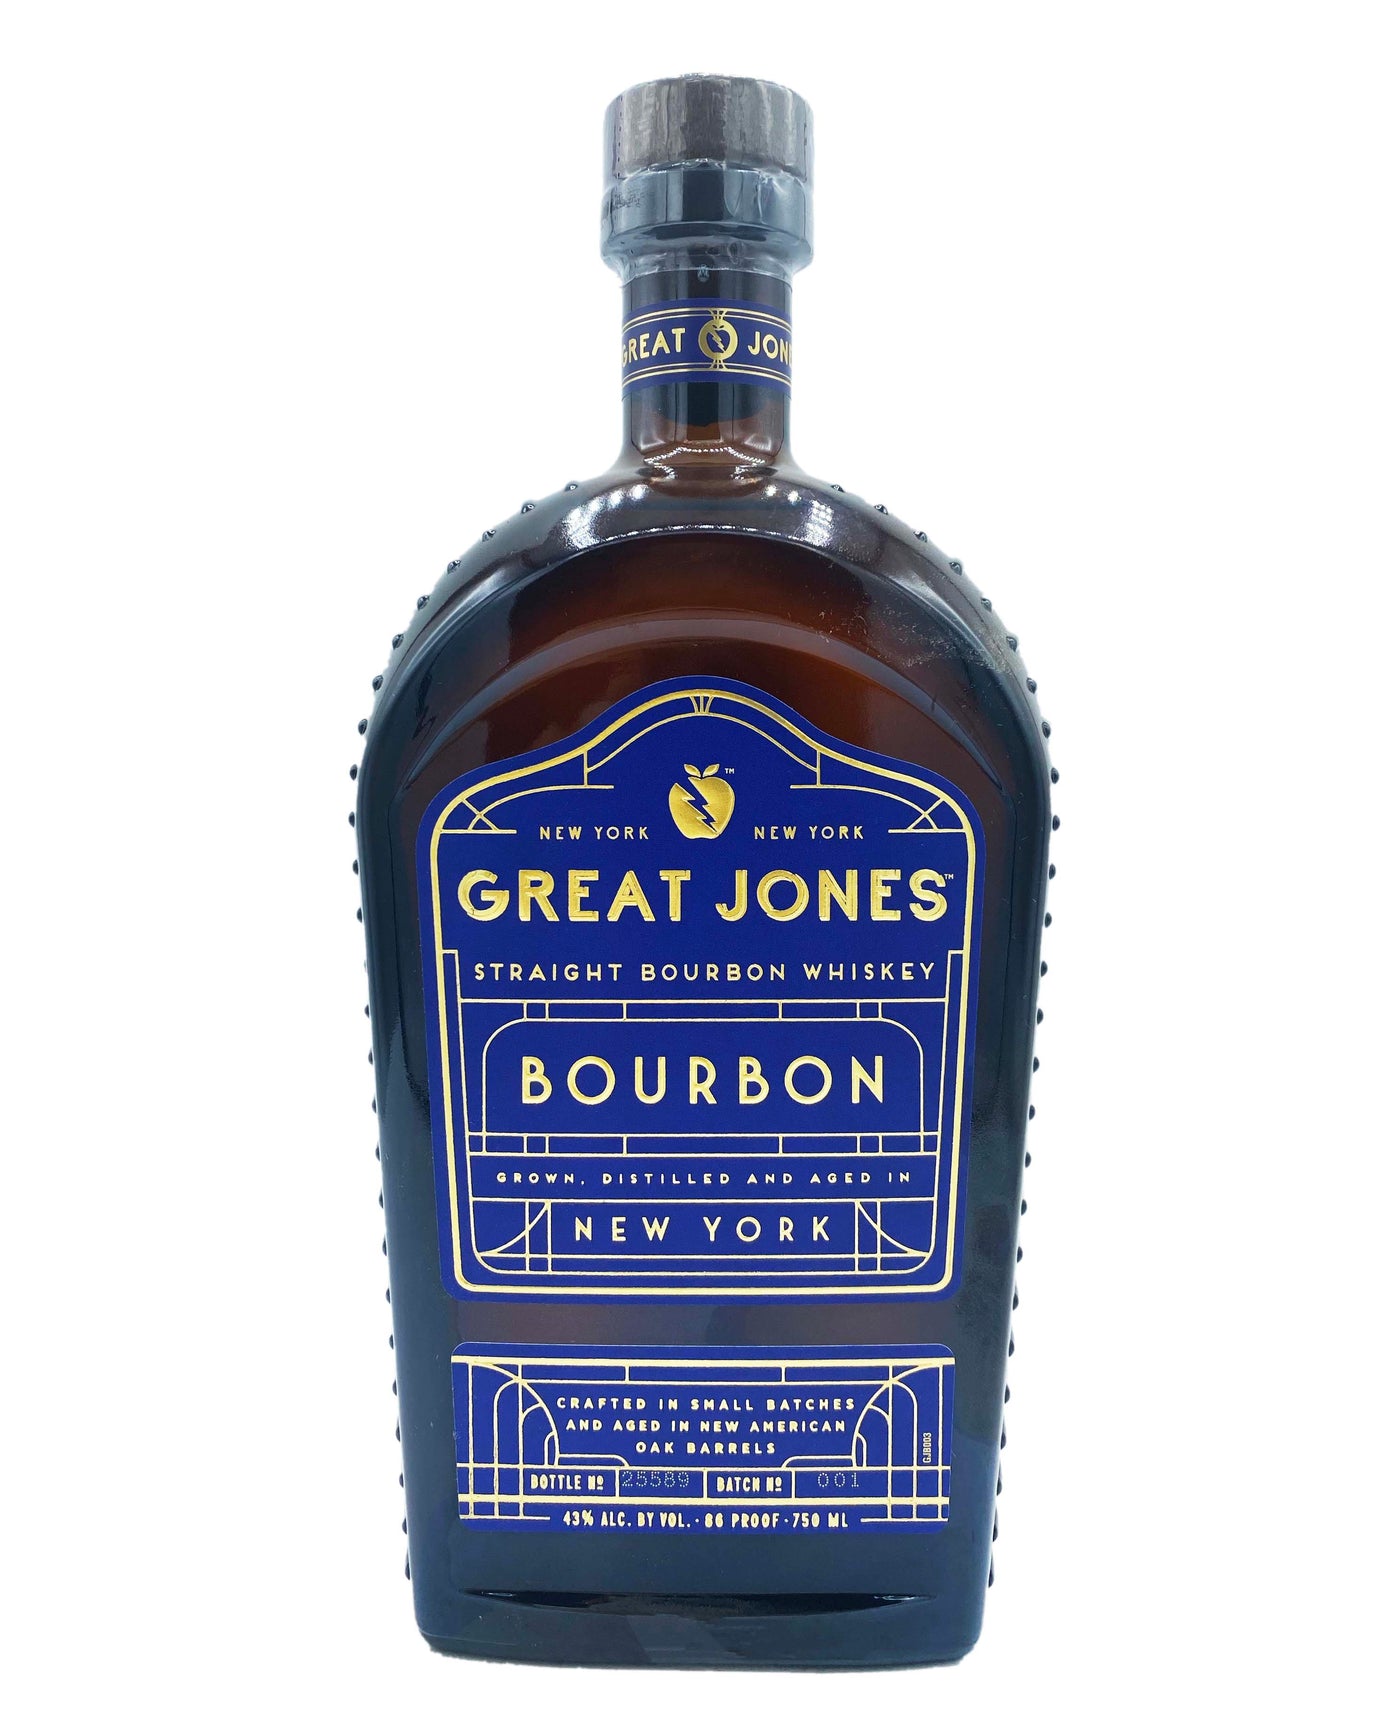 Great Jones Bourbon 750ml